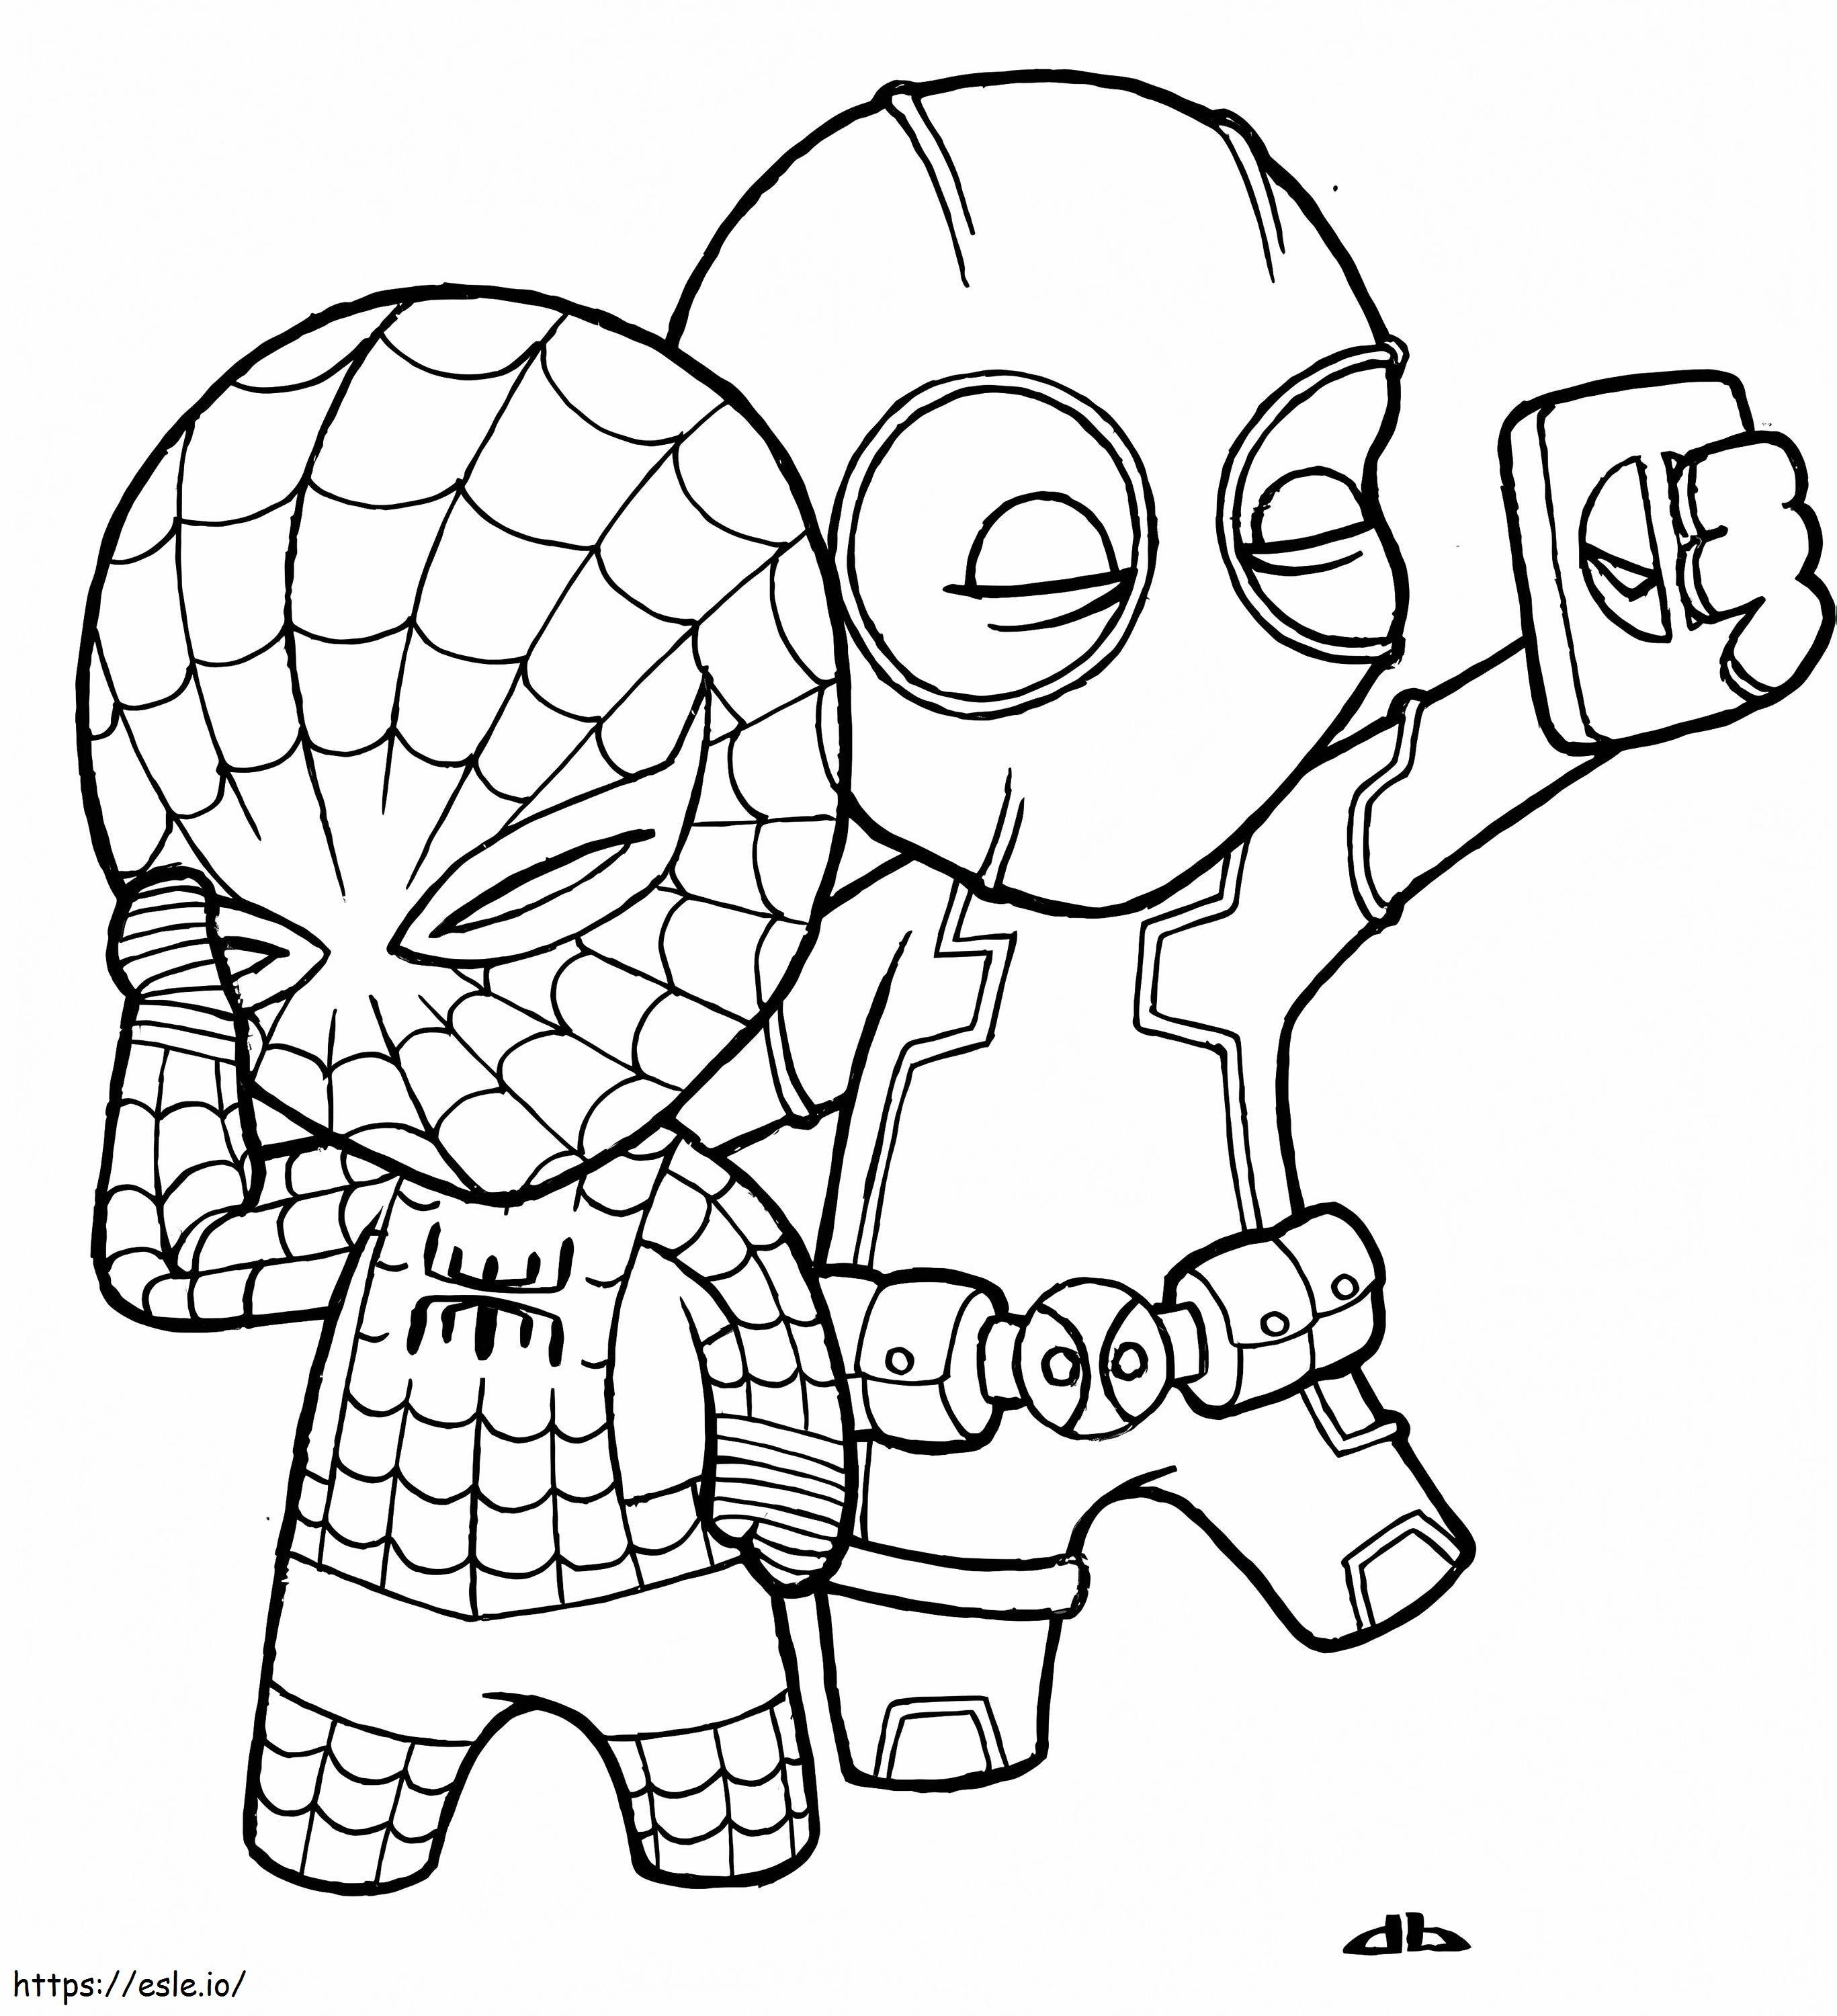 Selfie com Aranha e Deadpool para colorir